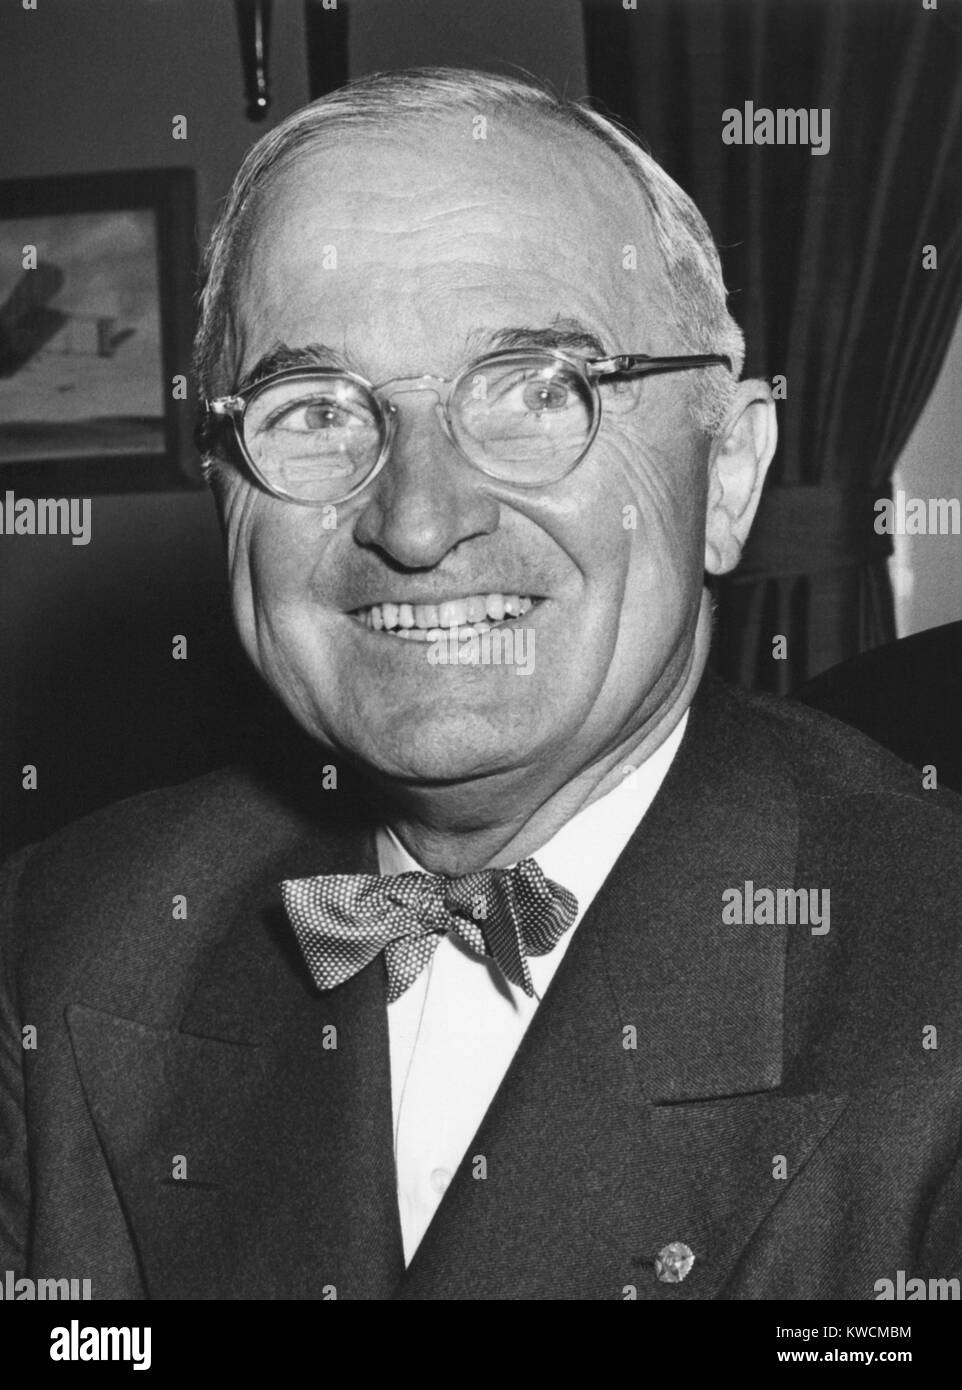 Harry Truman zu Beginn seiner 6 Jahr als US-Präsident mit einem Lächeln. Foto bei Truman's White House Office am 12. April 1950 berücksichtigt. - (BSLOC 2014 15 12) Stockfoto